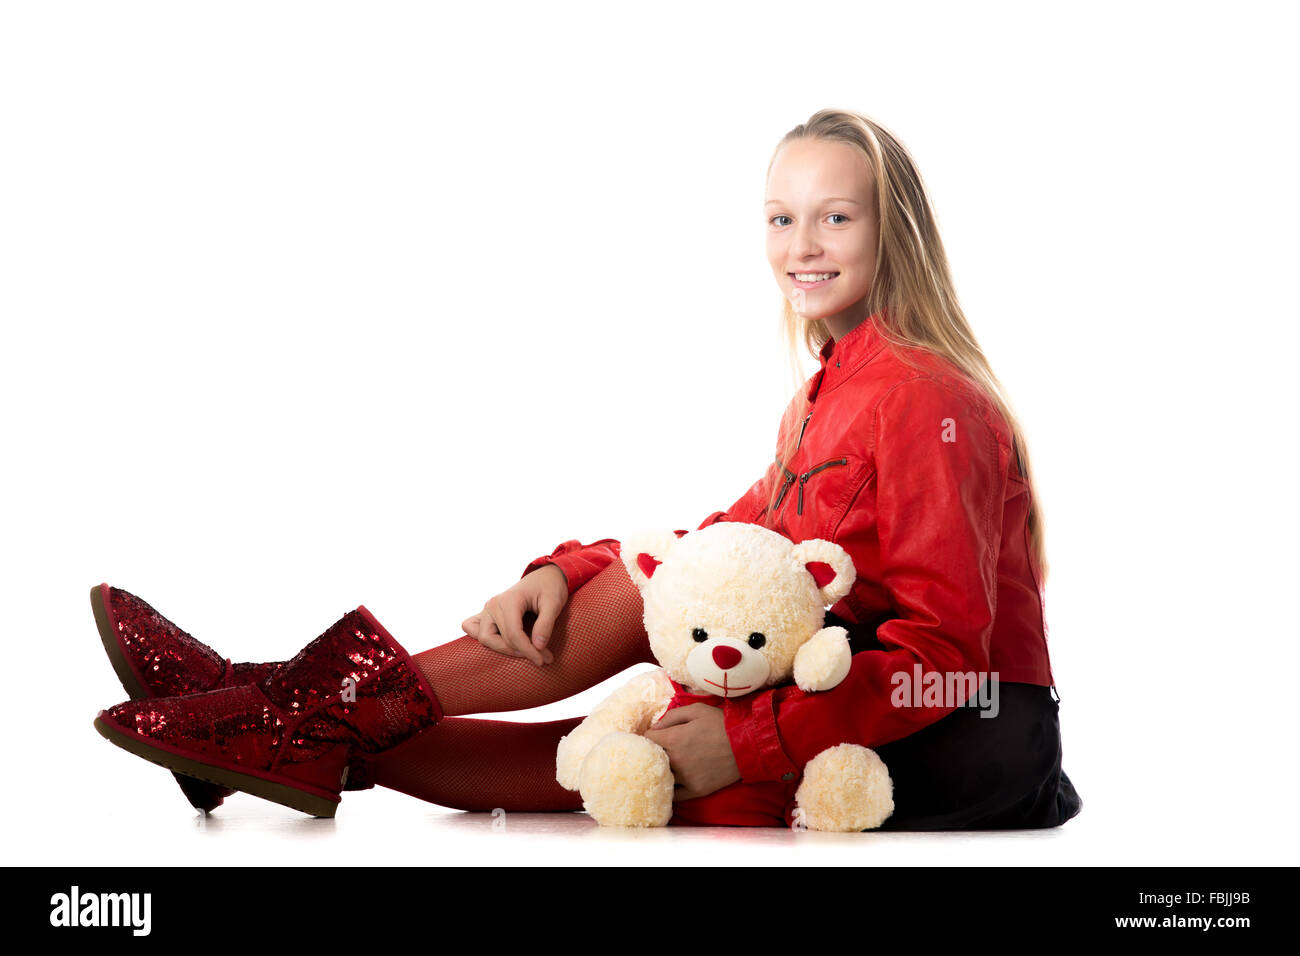 Porträt von glücklich schön lässig Teenager-Mädchen in rote Lederjacke sitzen mit Teddybär, freundlich lächelnd, kam zu betrachten Stockfoto